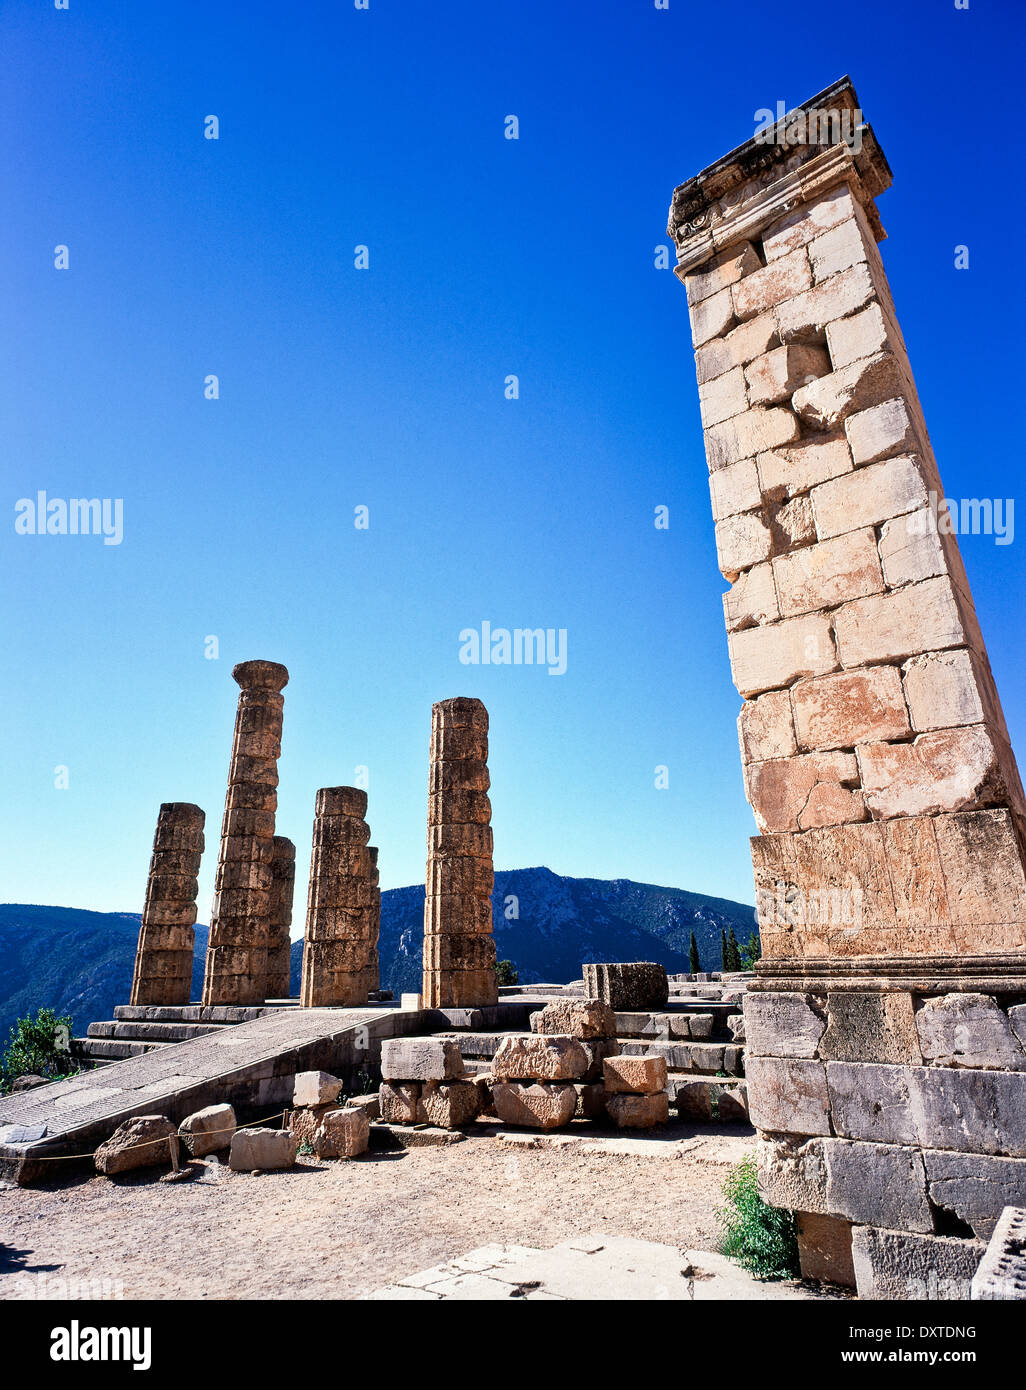 the Temple of Apollo ruins at ancient Delphi Sterea Ellada Greece Stock Photo